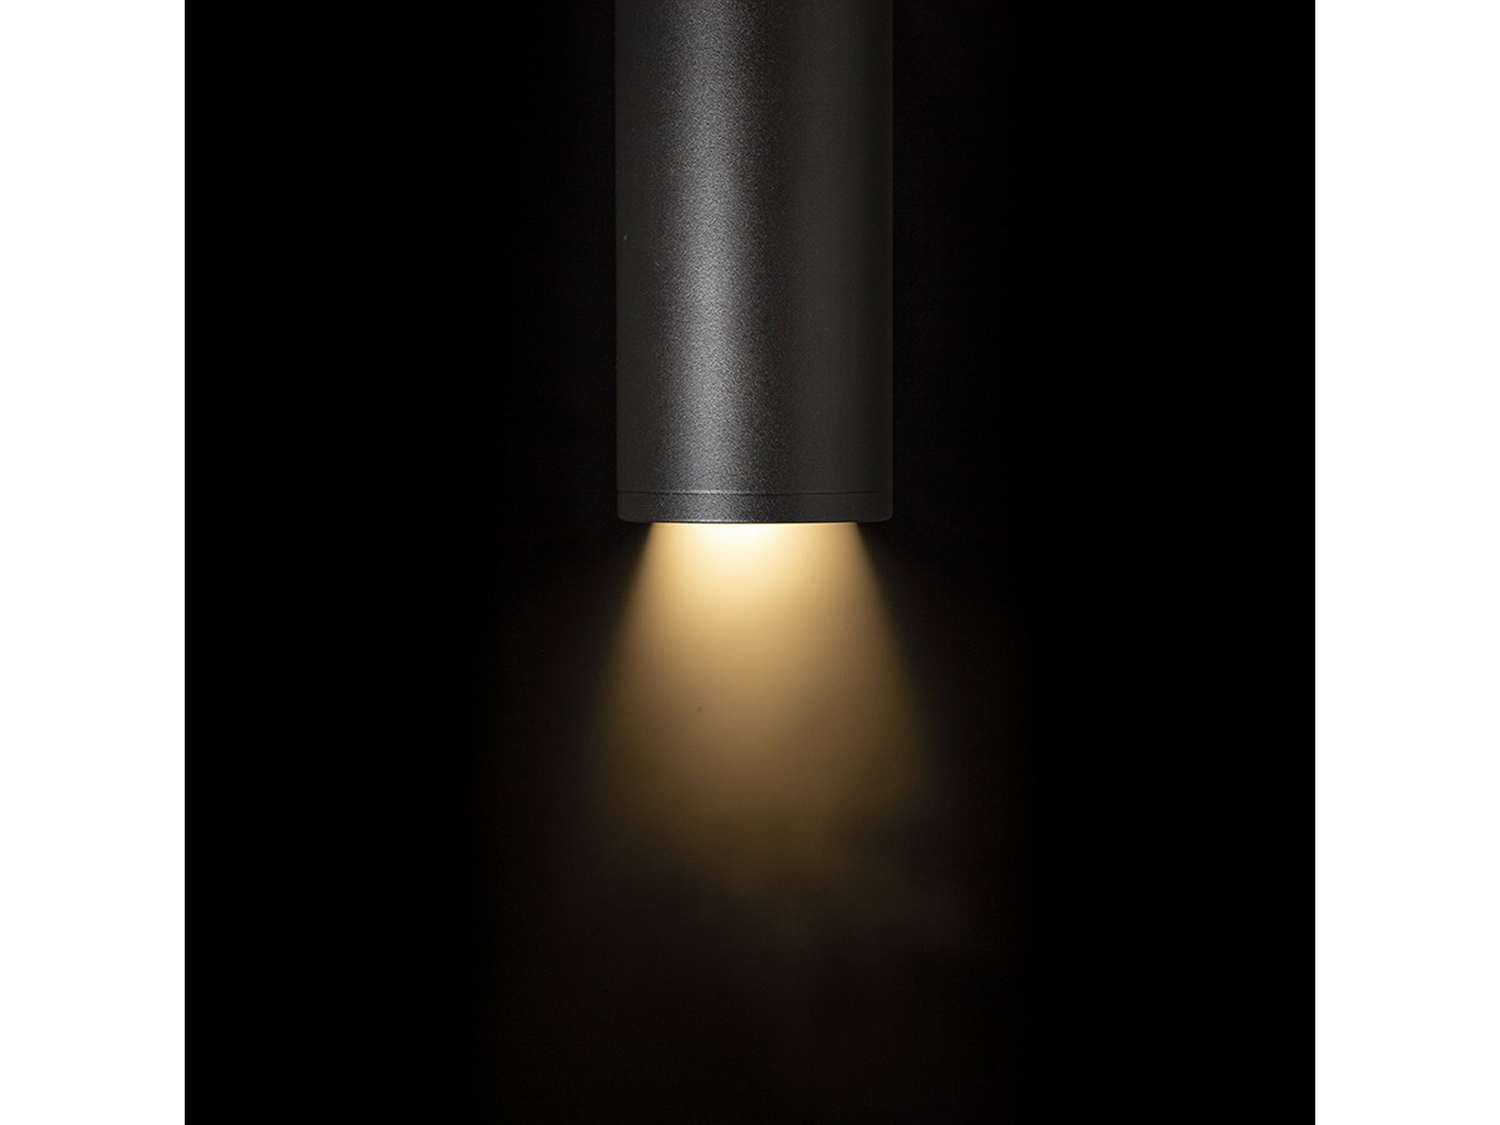 Stropní svítidlo OPTIMUS pro jednookruhovou lištu, černé, 230V, GU10, 10-50°, 18cm